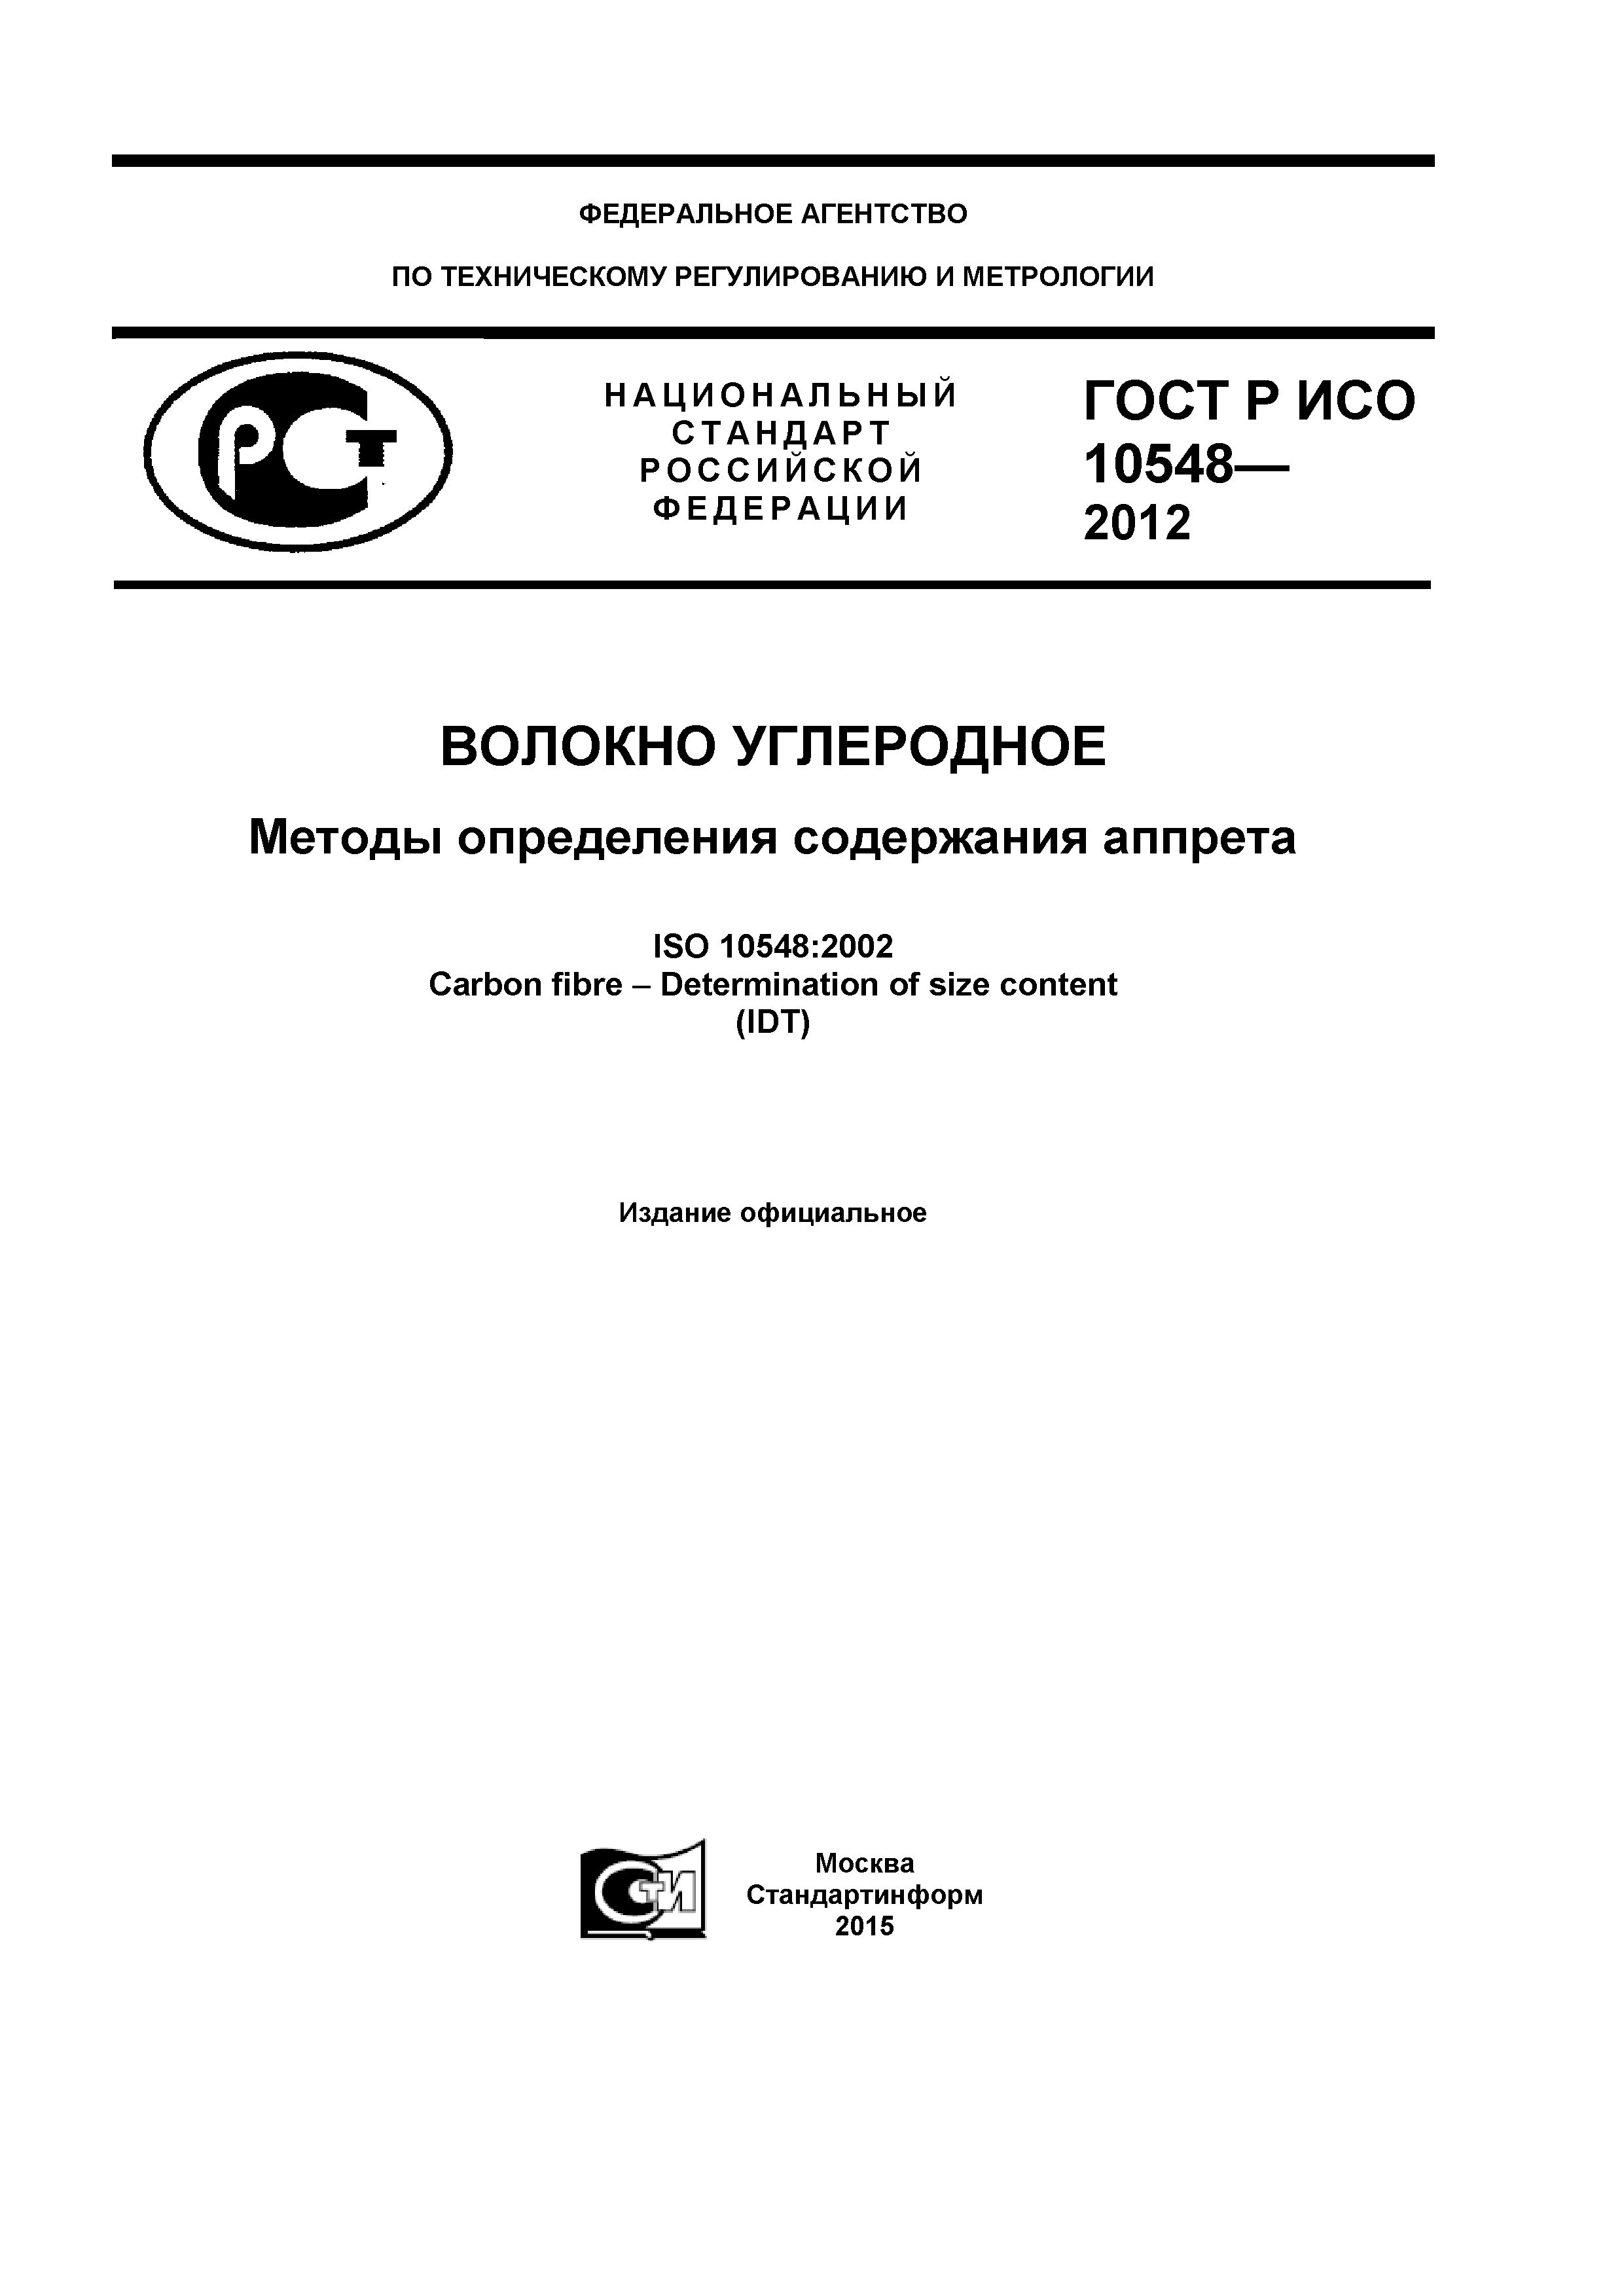 ГОСТ Р ИСО 10548-2012